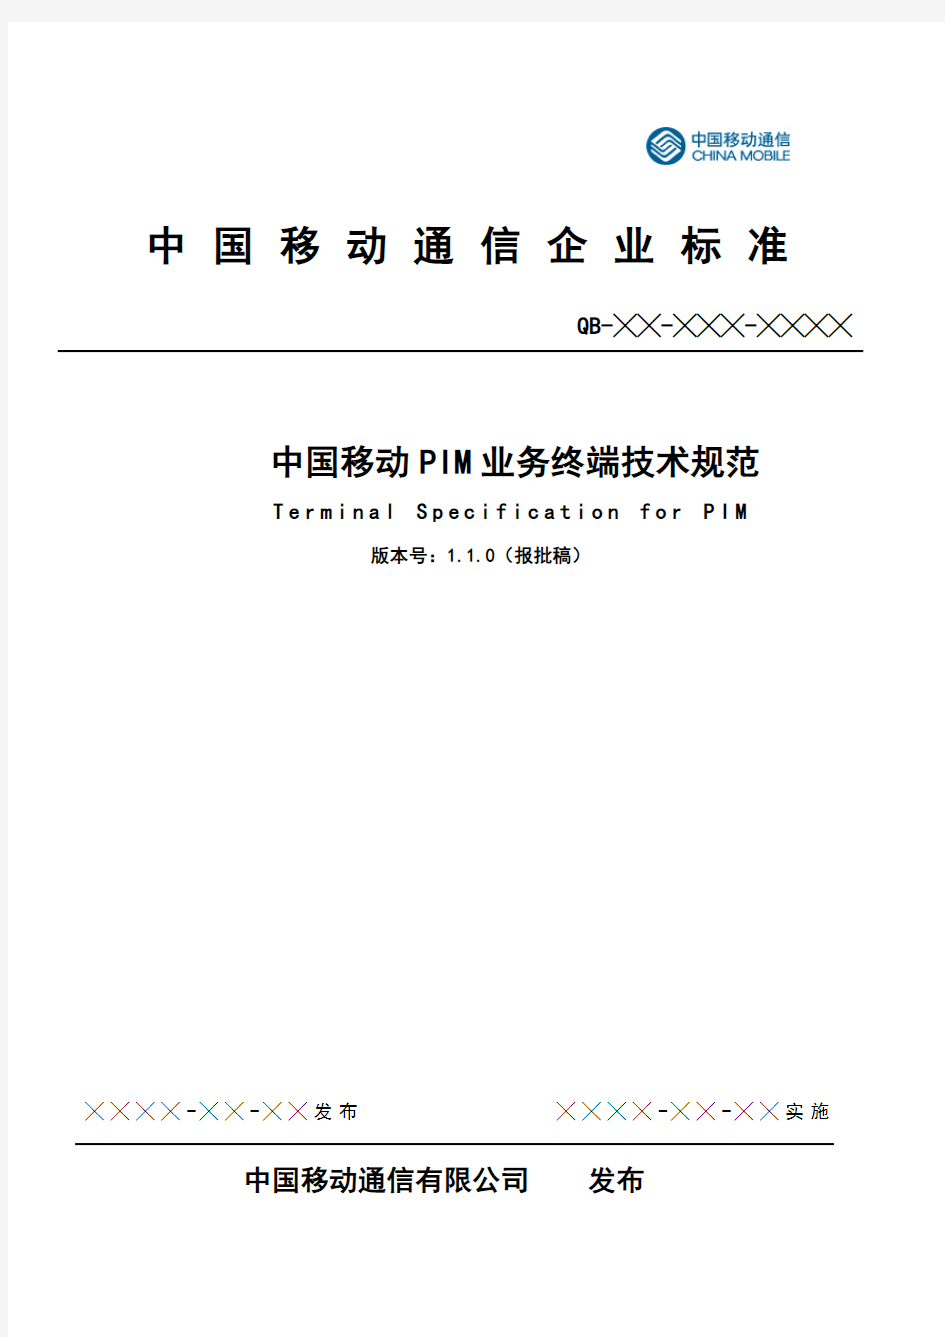 (技术规范标准)中国移动PIM业务终端技术规范